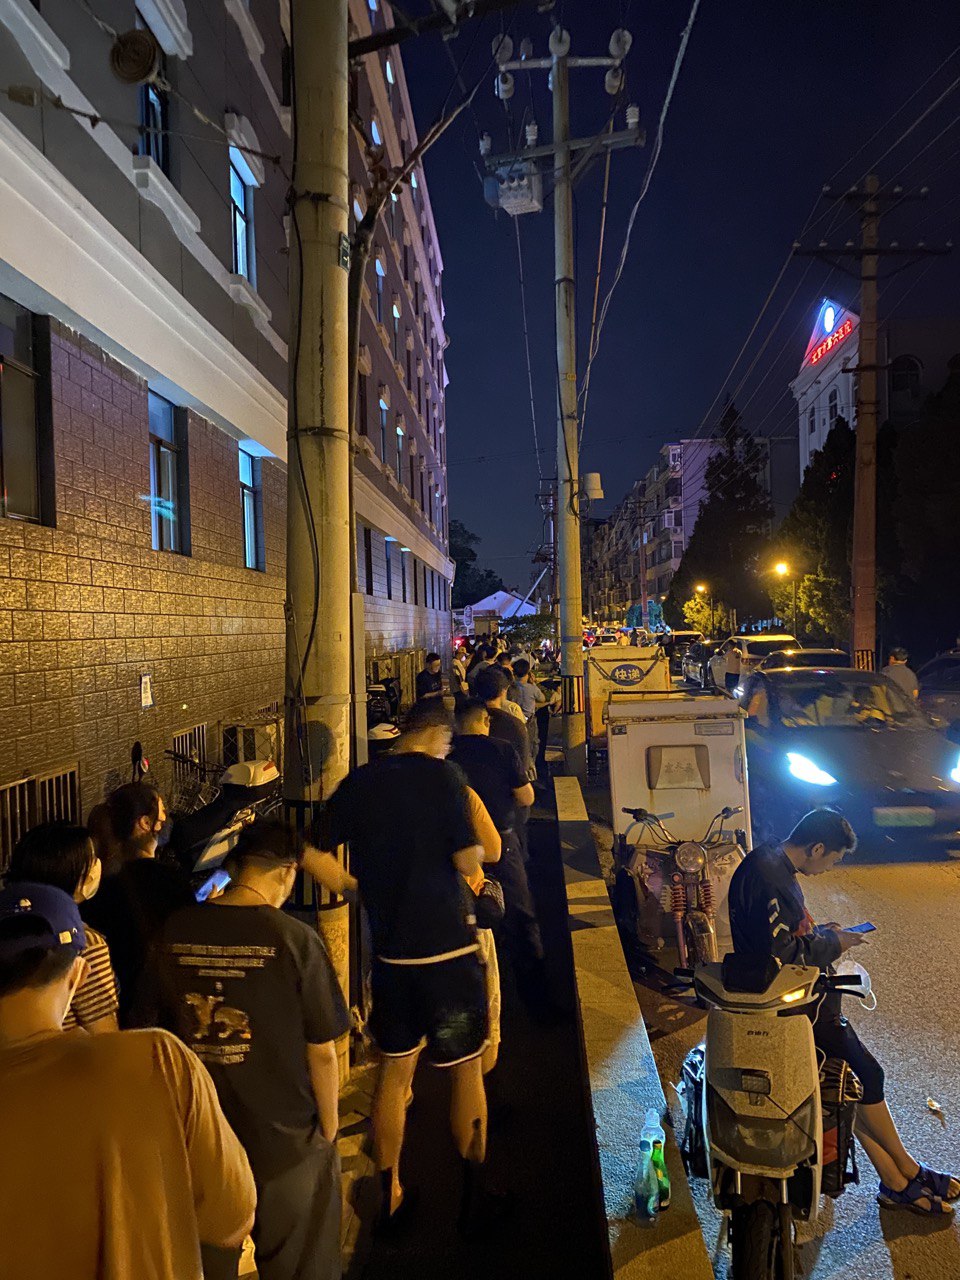 一张在夜晚拍摄的街景照片：较窄的小巷中有等候进行 COVID-19 病毒检测的队伍，以及多个行人与车辆，右侧的霓虹灯上的文字是“北京市第六医院”